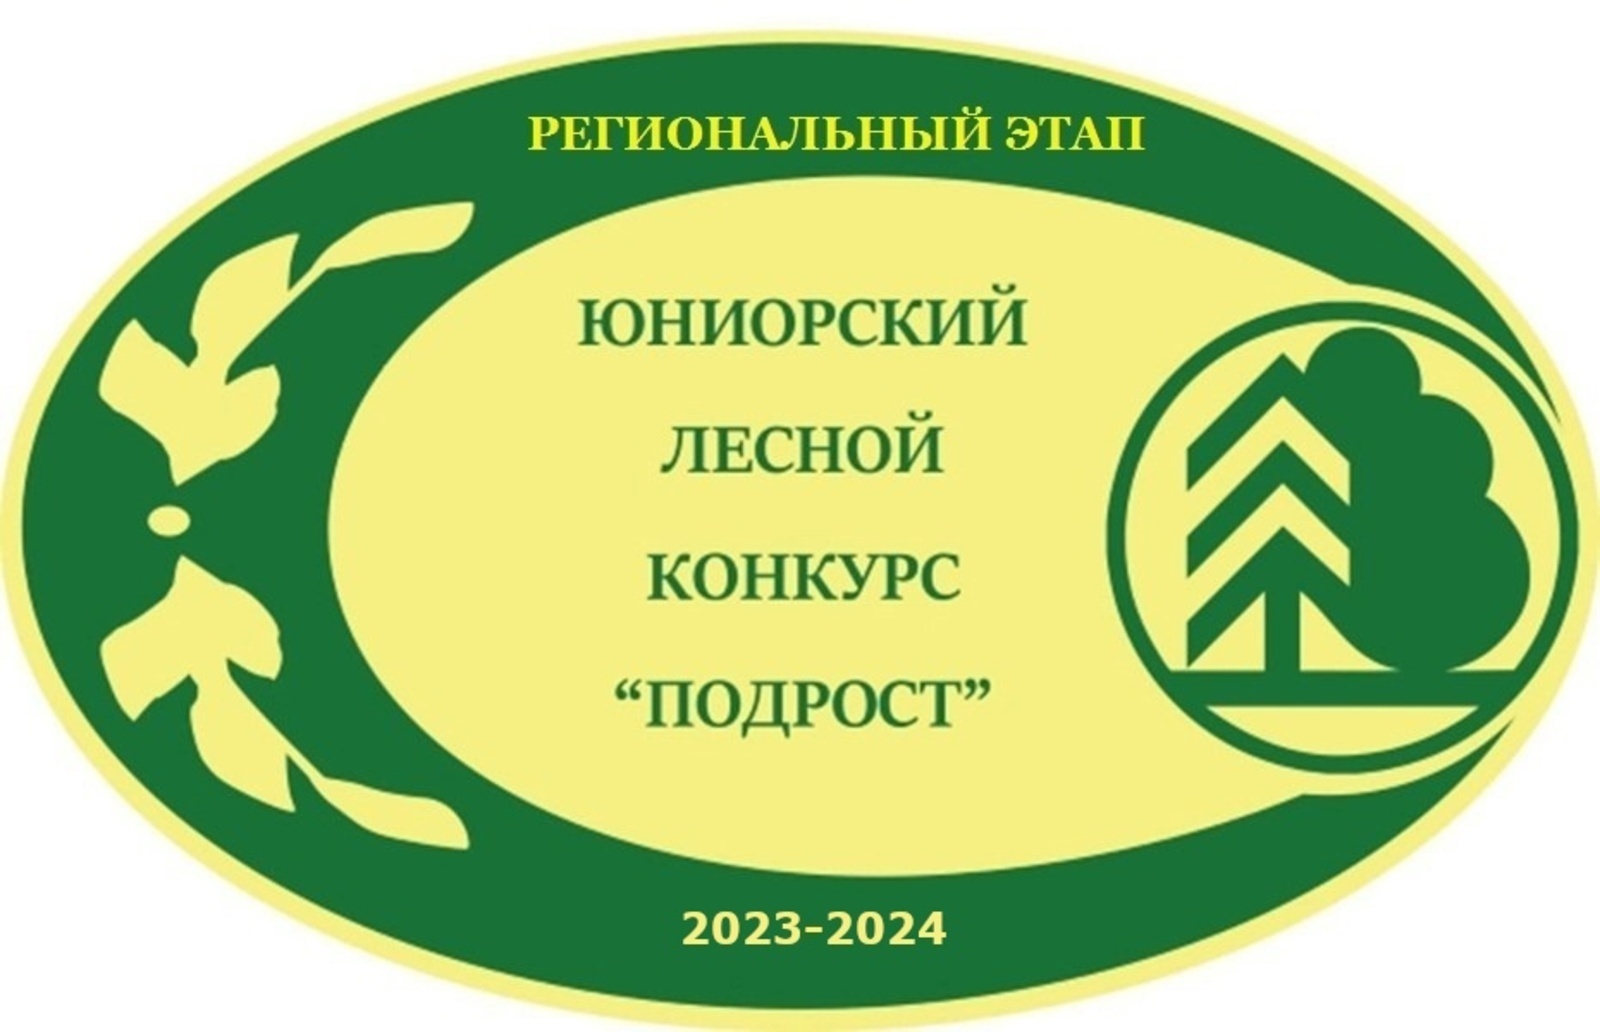 В Башкортостане идет прием работ на региональный этап Всероссийского юниорского лесного конкурса «Подрост»